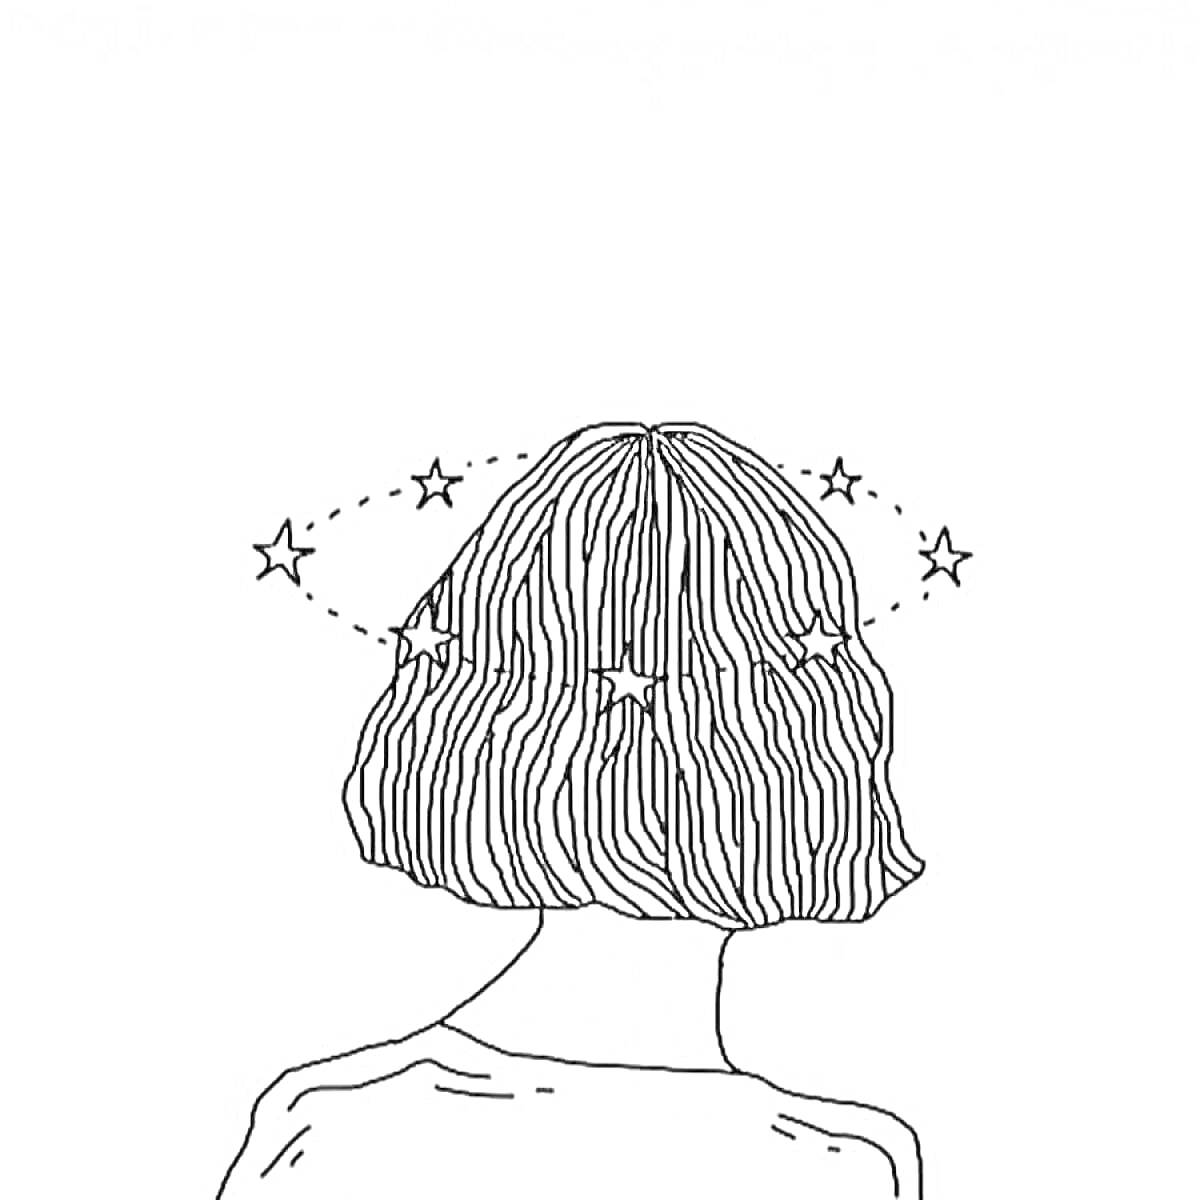 Раскраска Силуэт человека с короткими волнистыми волосами и звездами вокруг головы